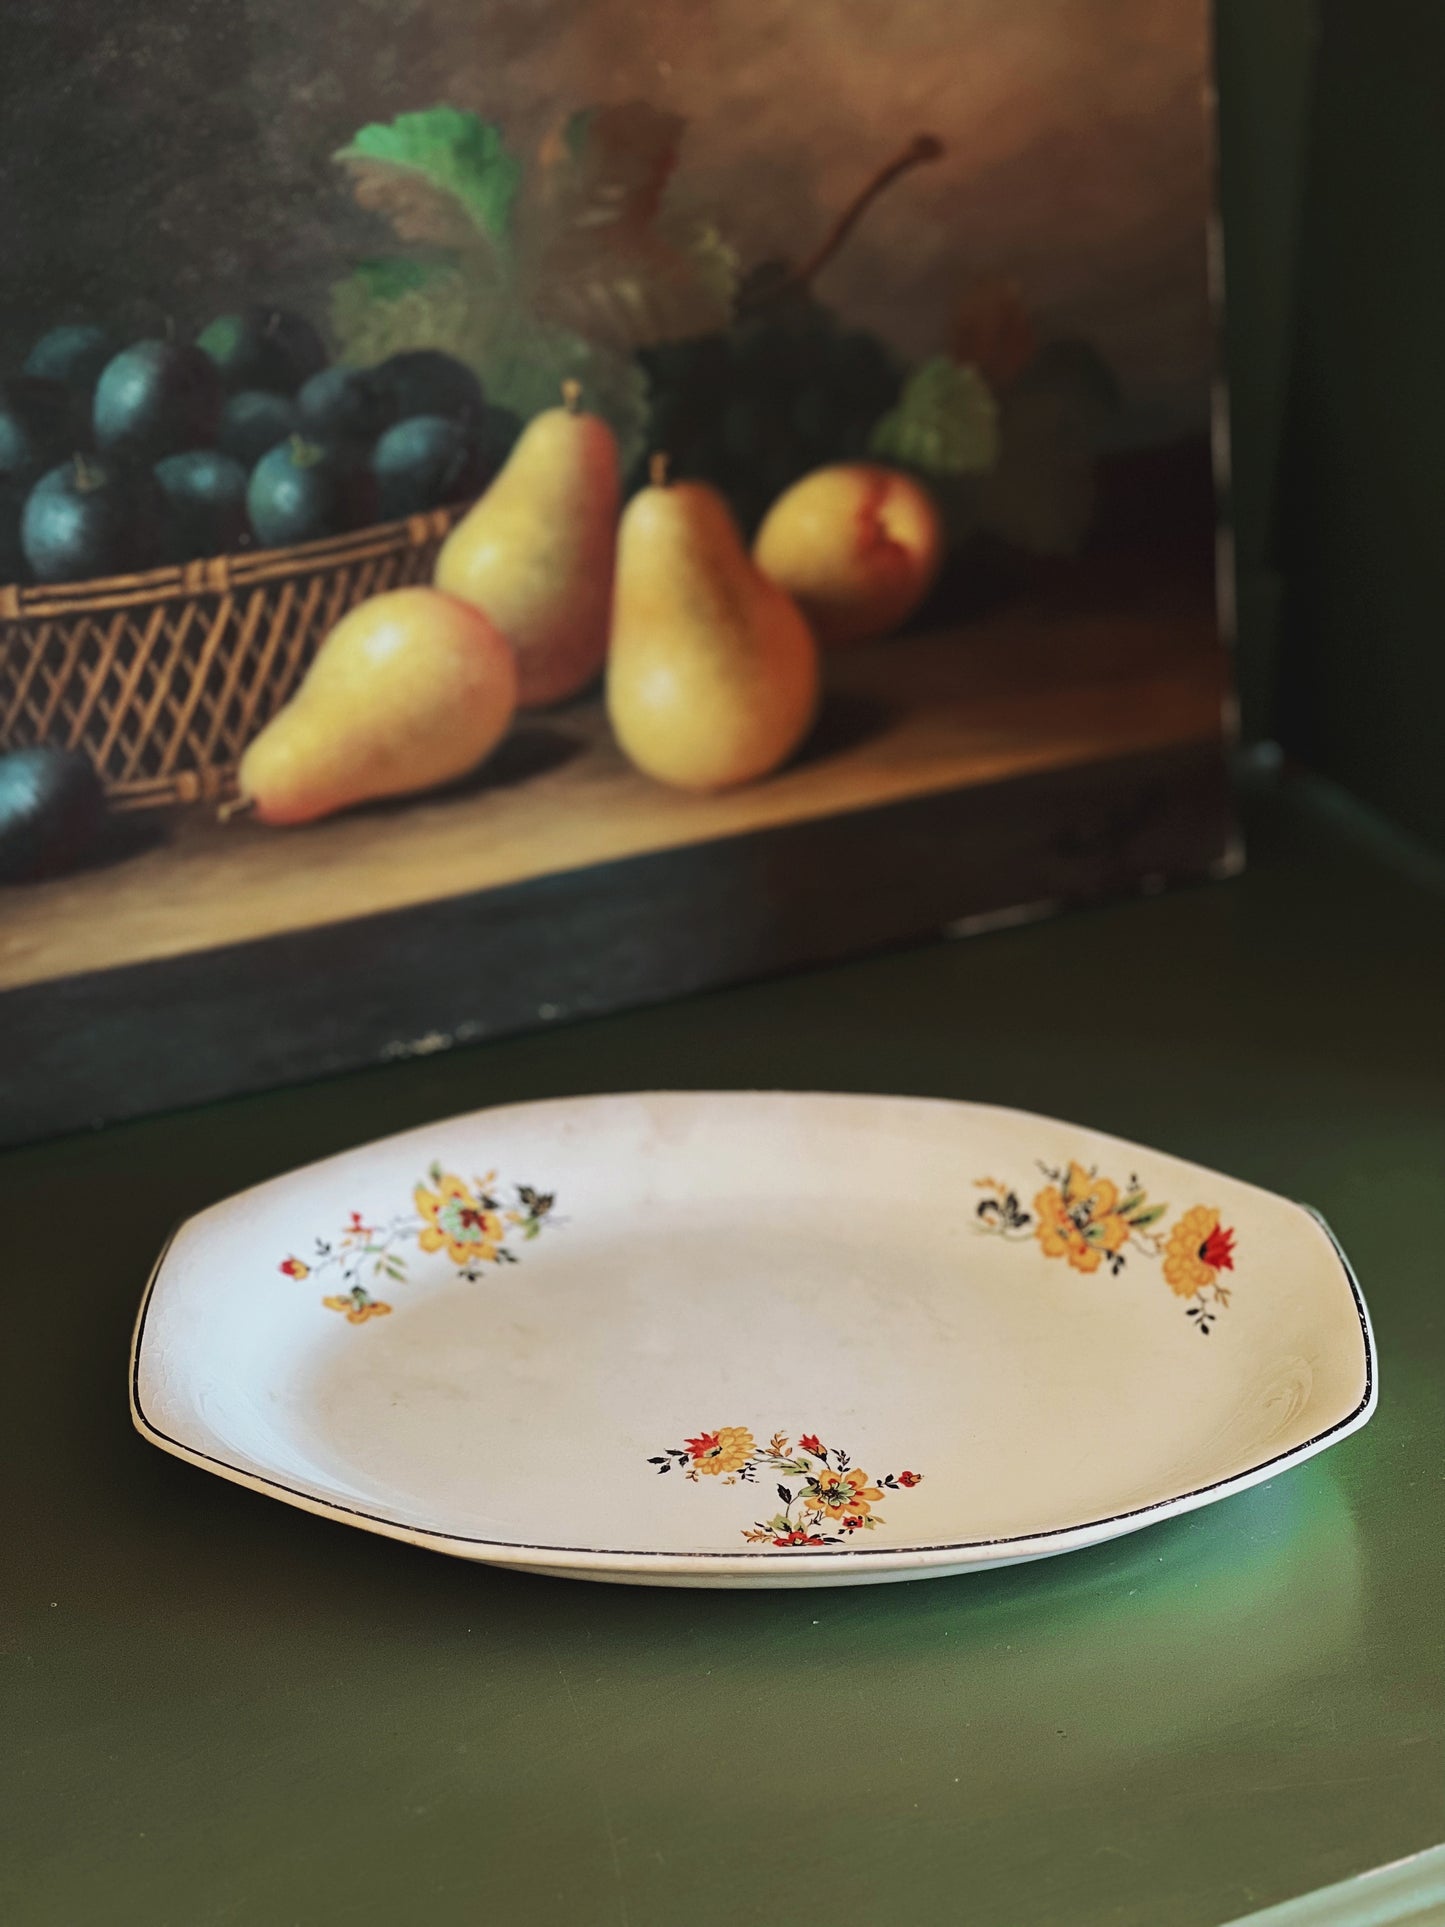 Antique Homer Laughlin Floral Platter